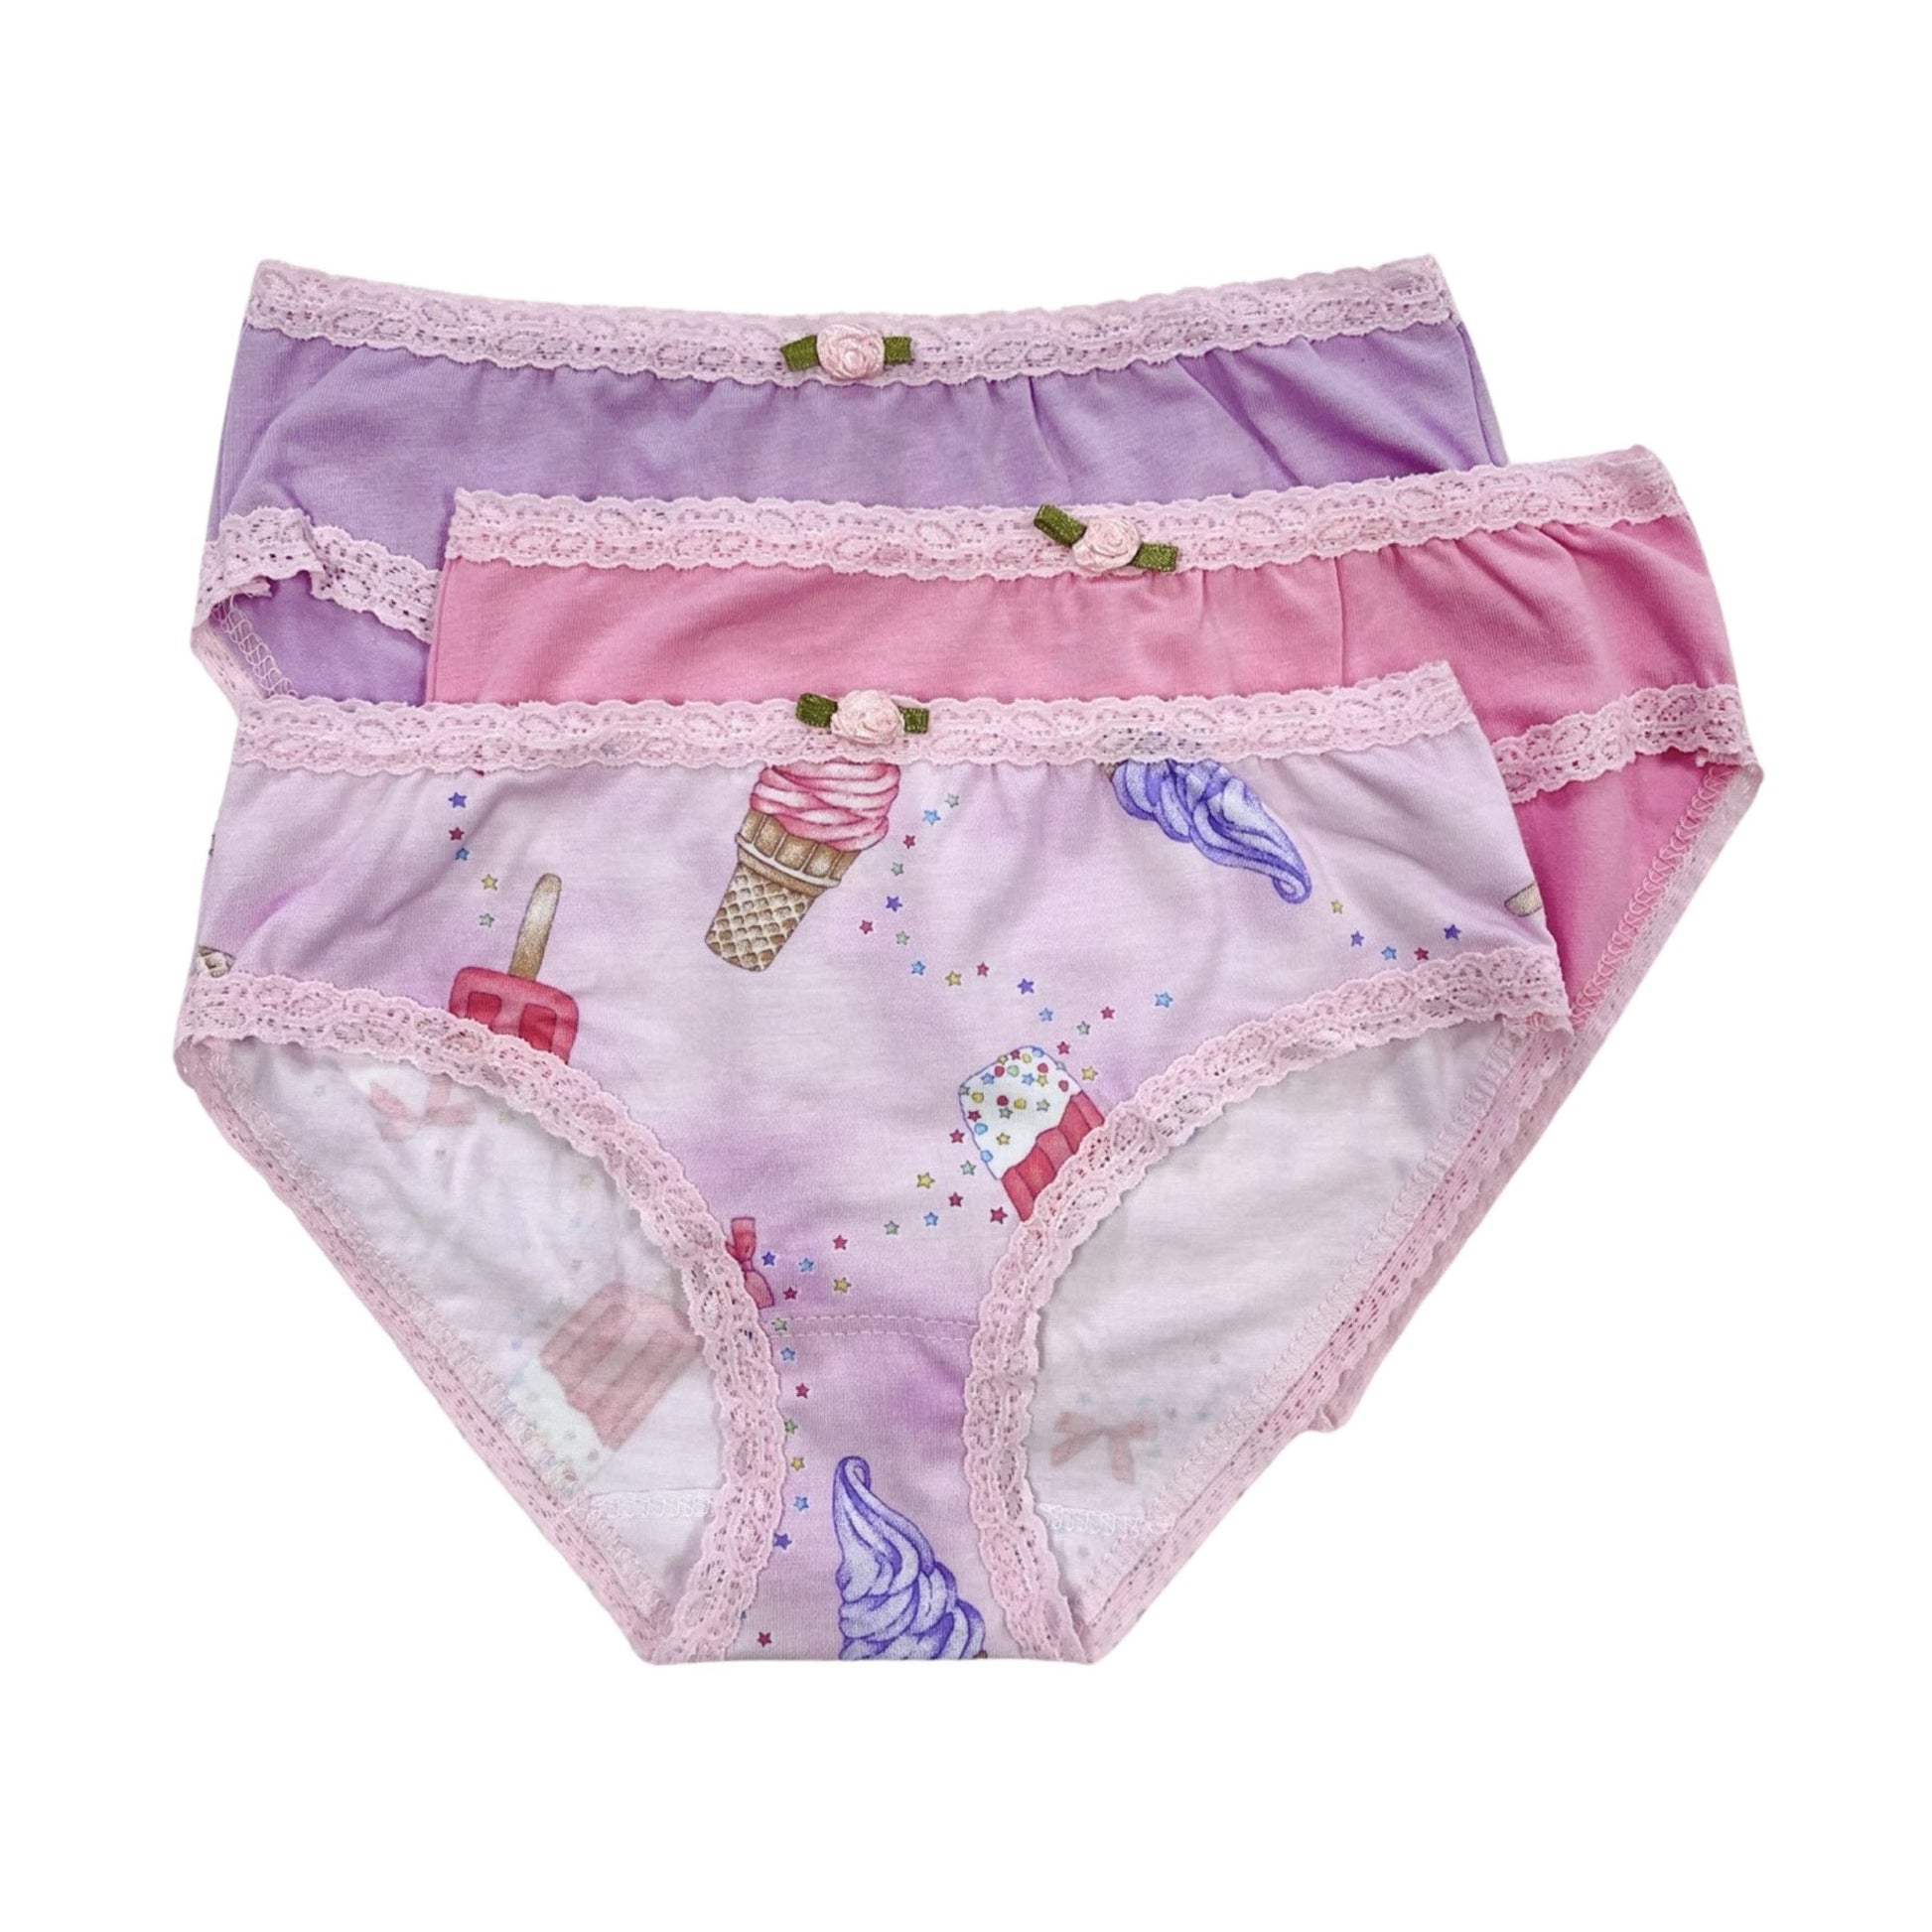 U20 Esme Girls Comfortable Underwear XS S M L XL PT 6 8 10 12 14